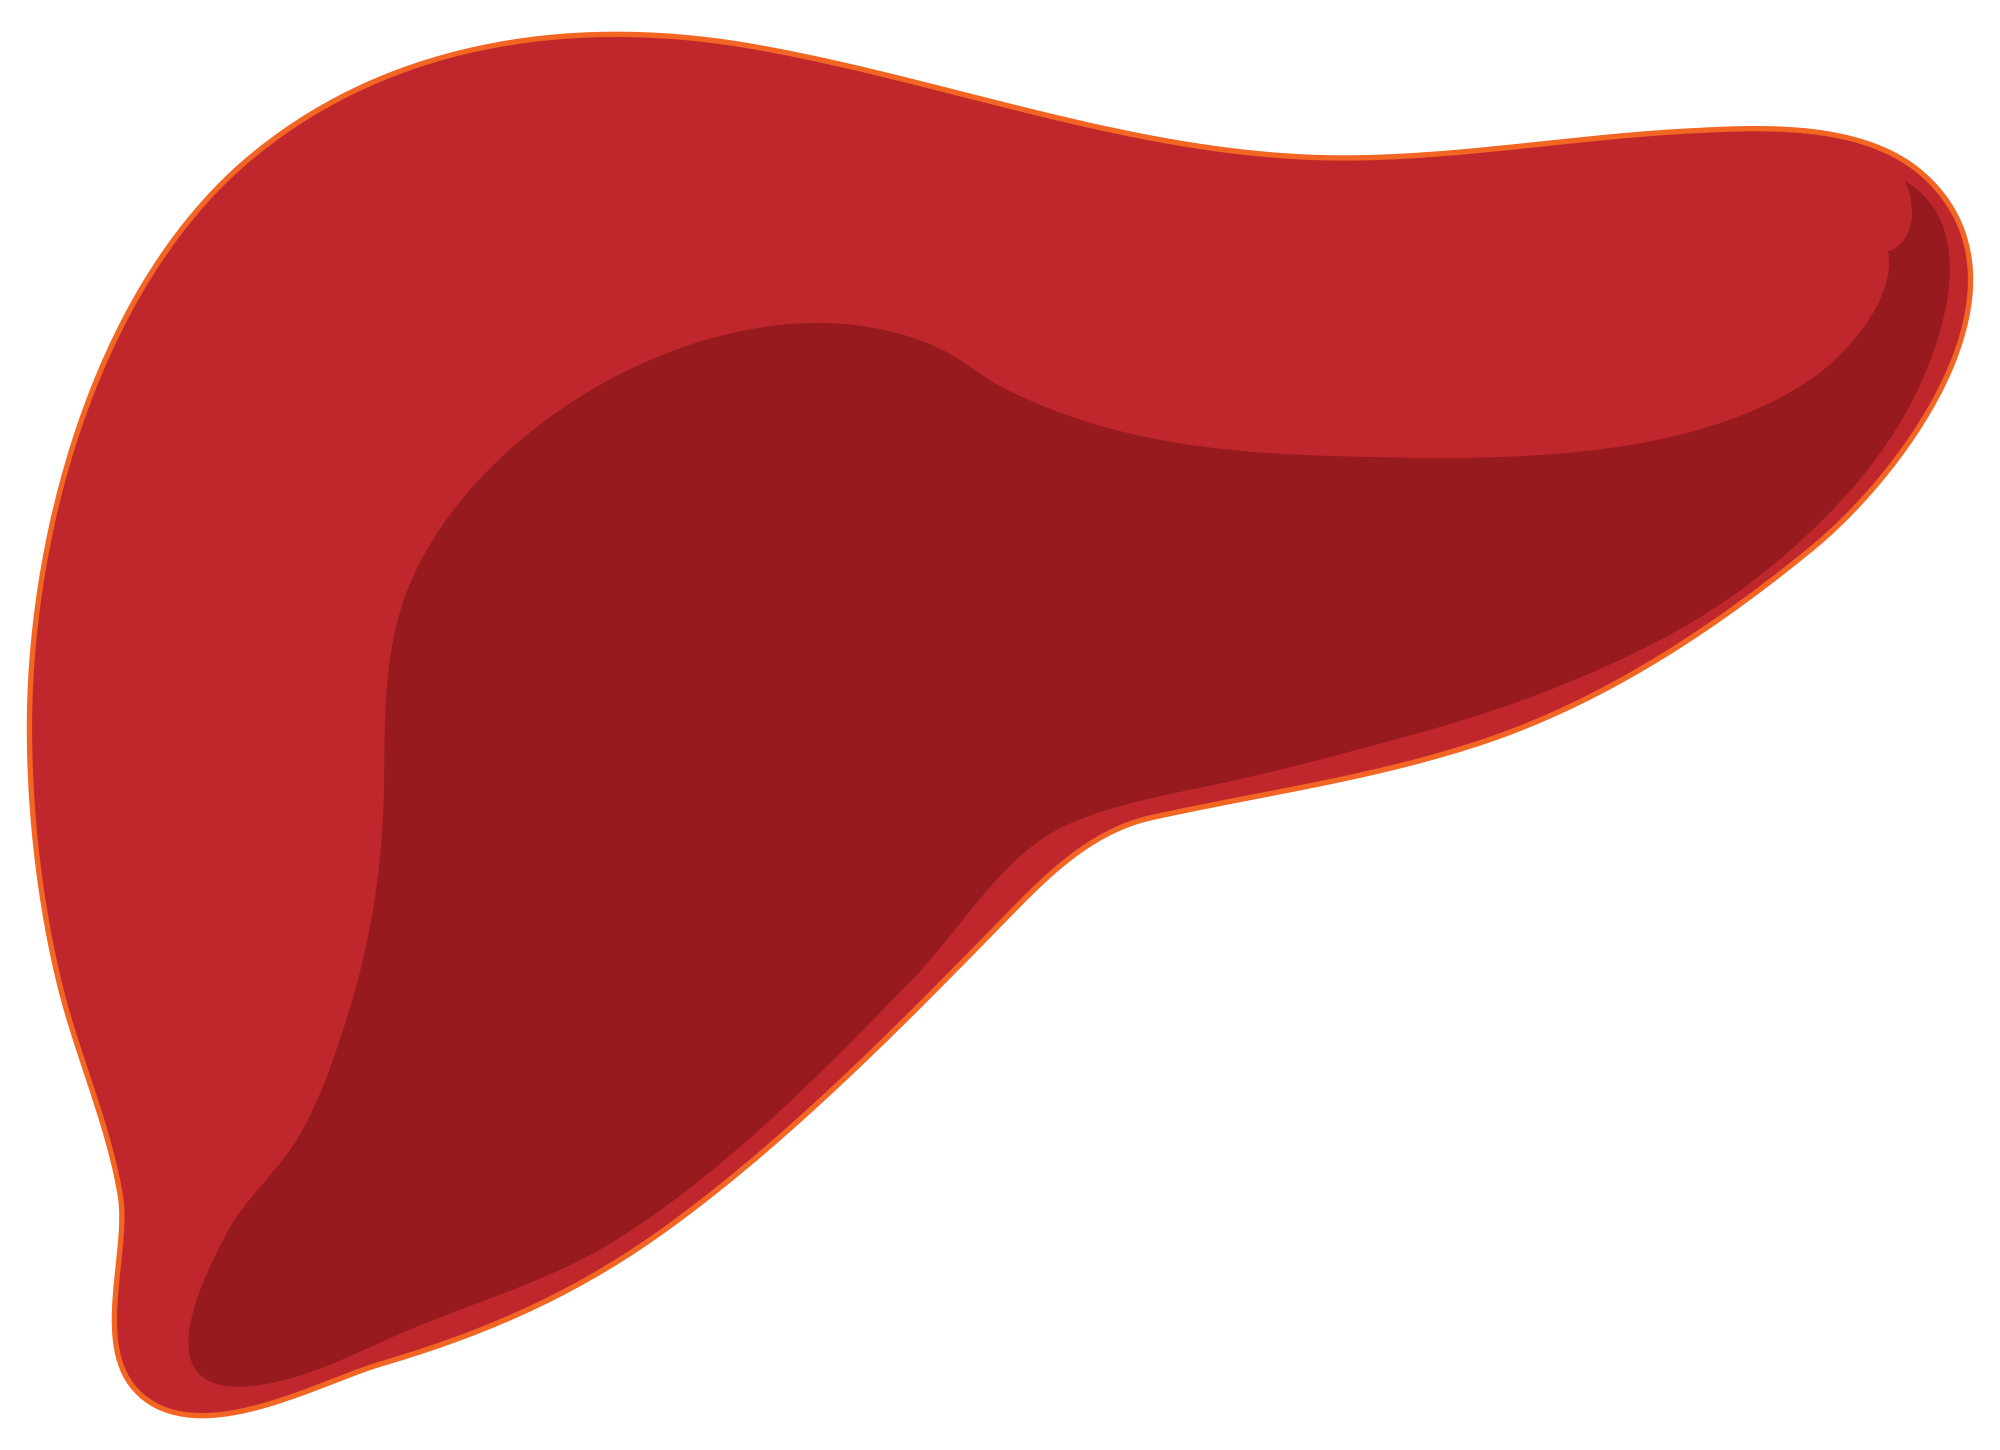 Fatty disease financial tribune. Liver clipart liver damage